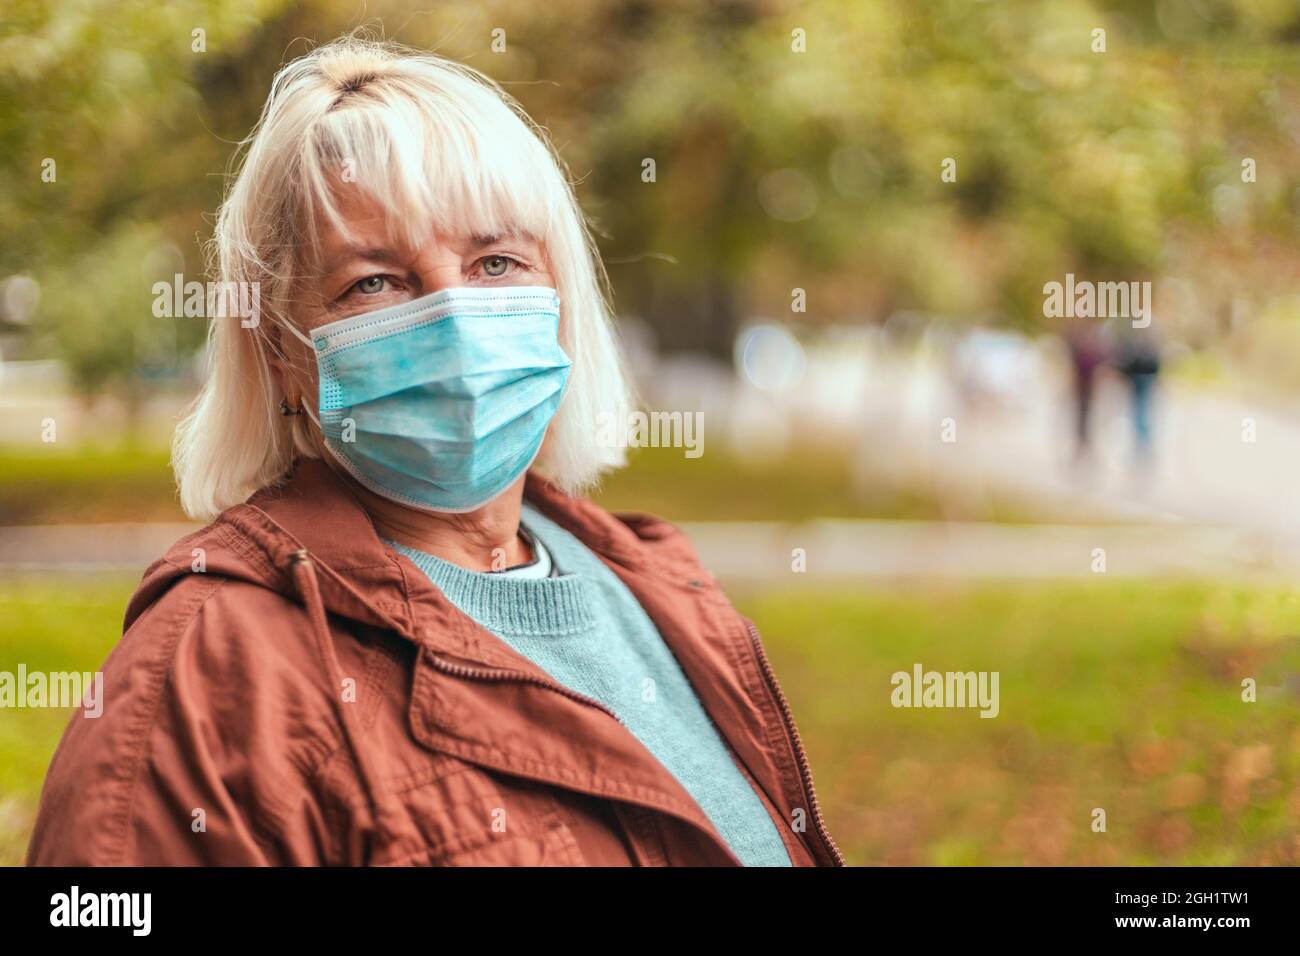 Coronavirus, COVID-19 Pandemiekonzept. Blonde Frau trägt Gesichtsmaske schützend für Krankheit Virus Stockfoto